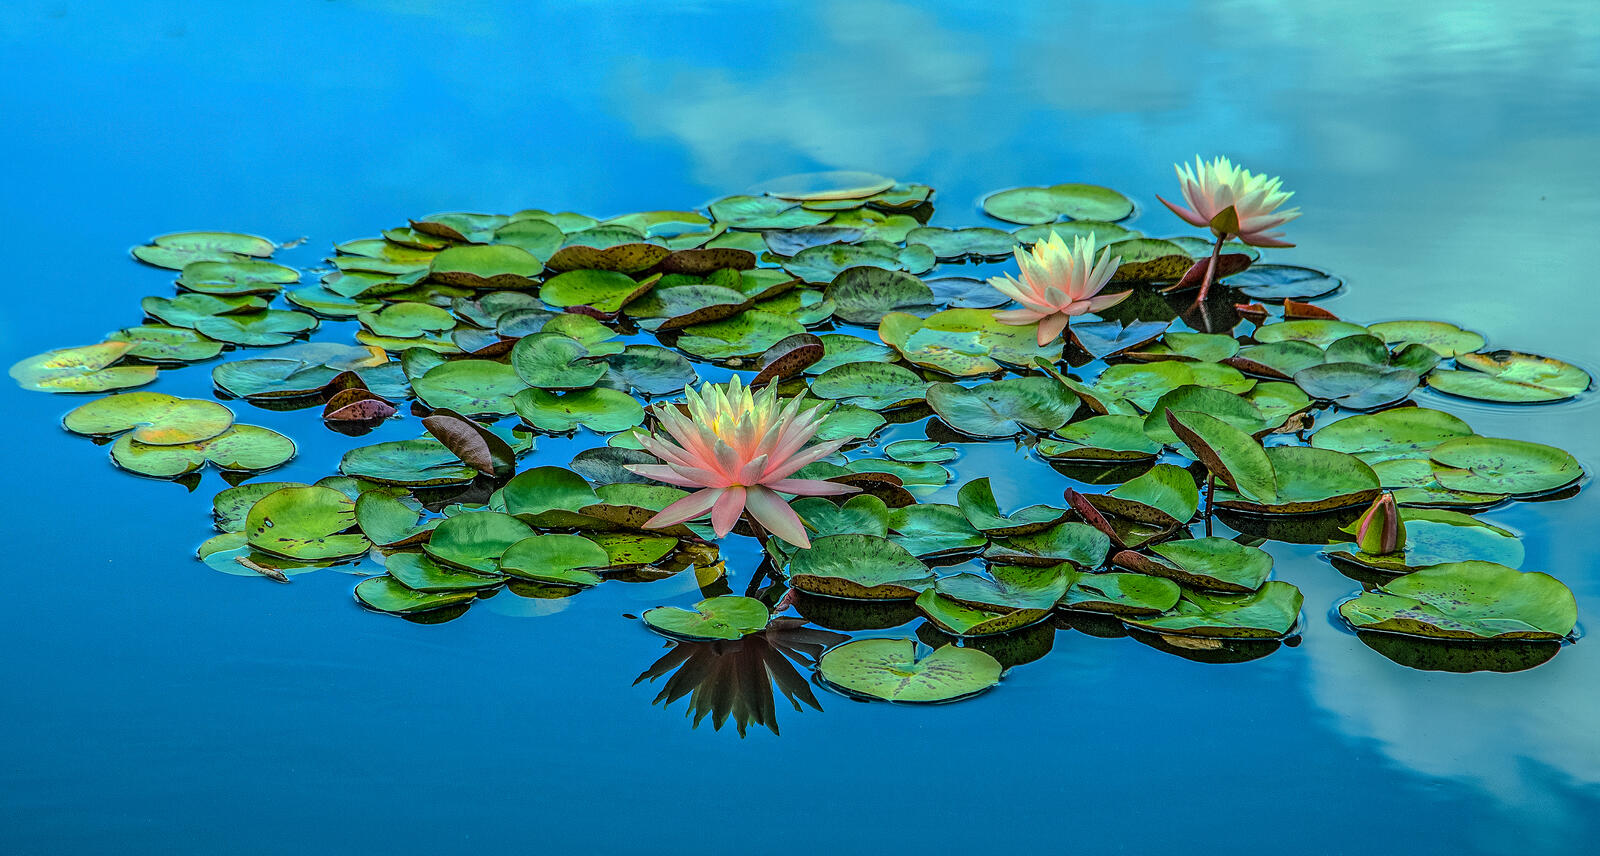 Обои водоём цветы болото на рабочий стол